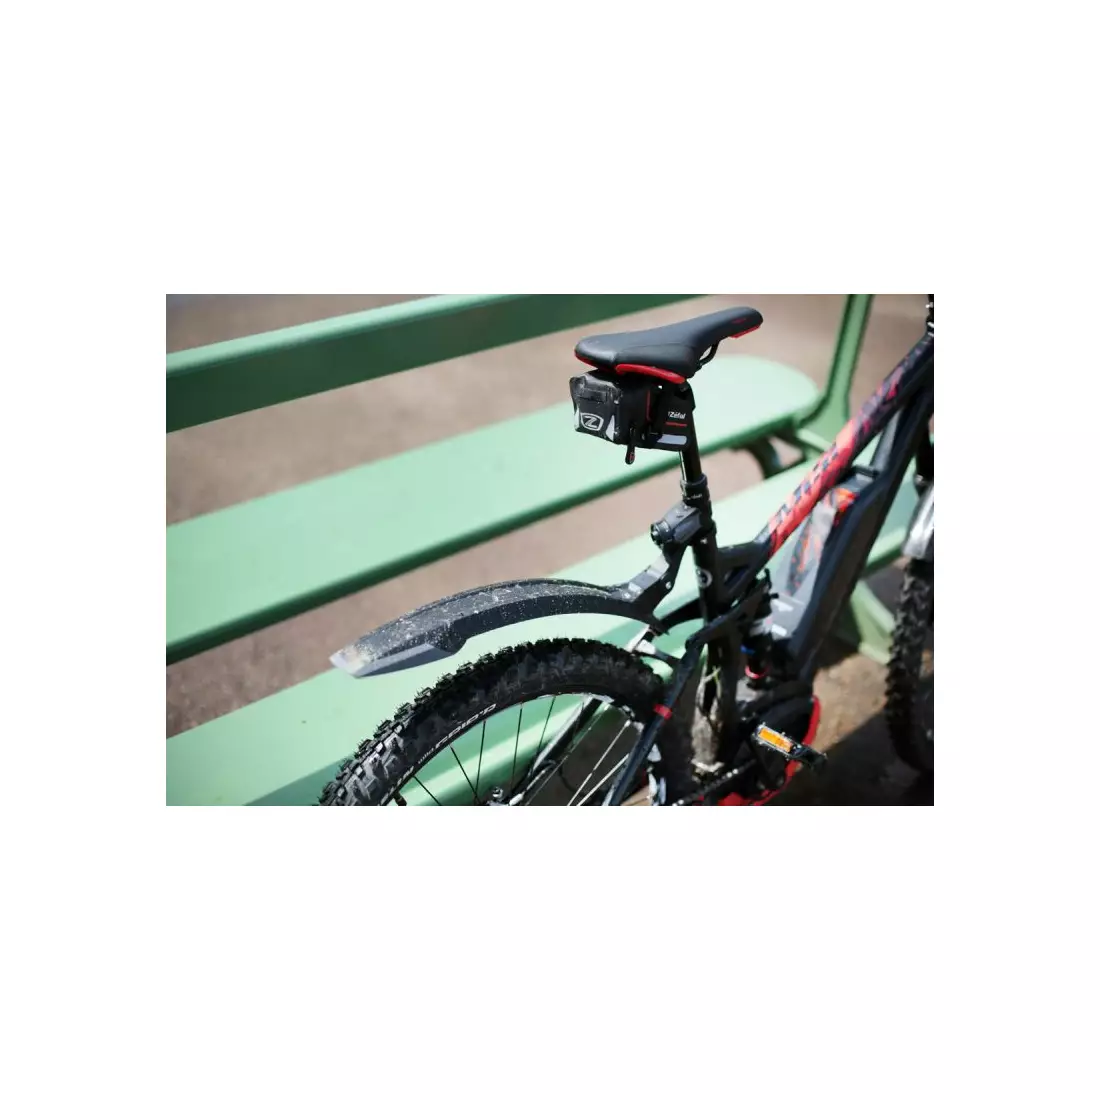 ZEFAL hátsó kerékpár sárvédő deflector rm 60+ black ZF-2507